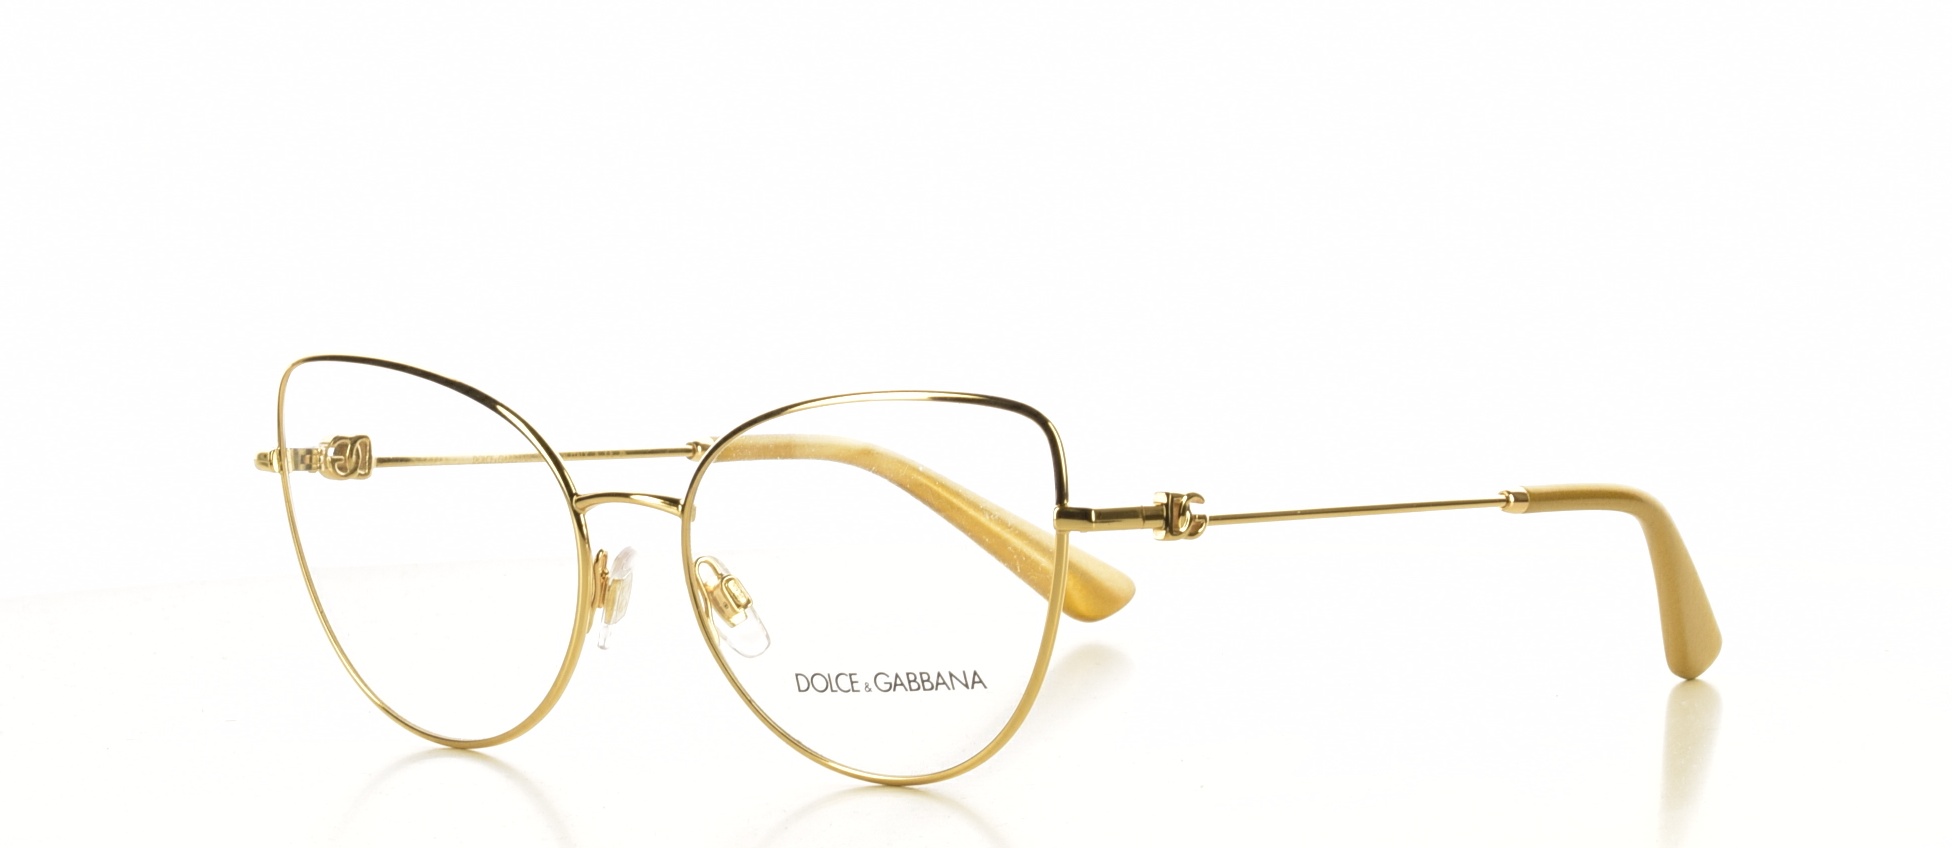 Rama ochelari vedere Dolce&Gabbana